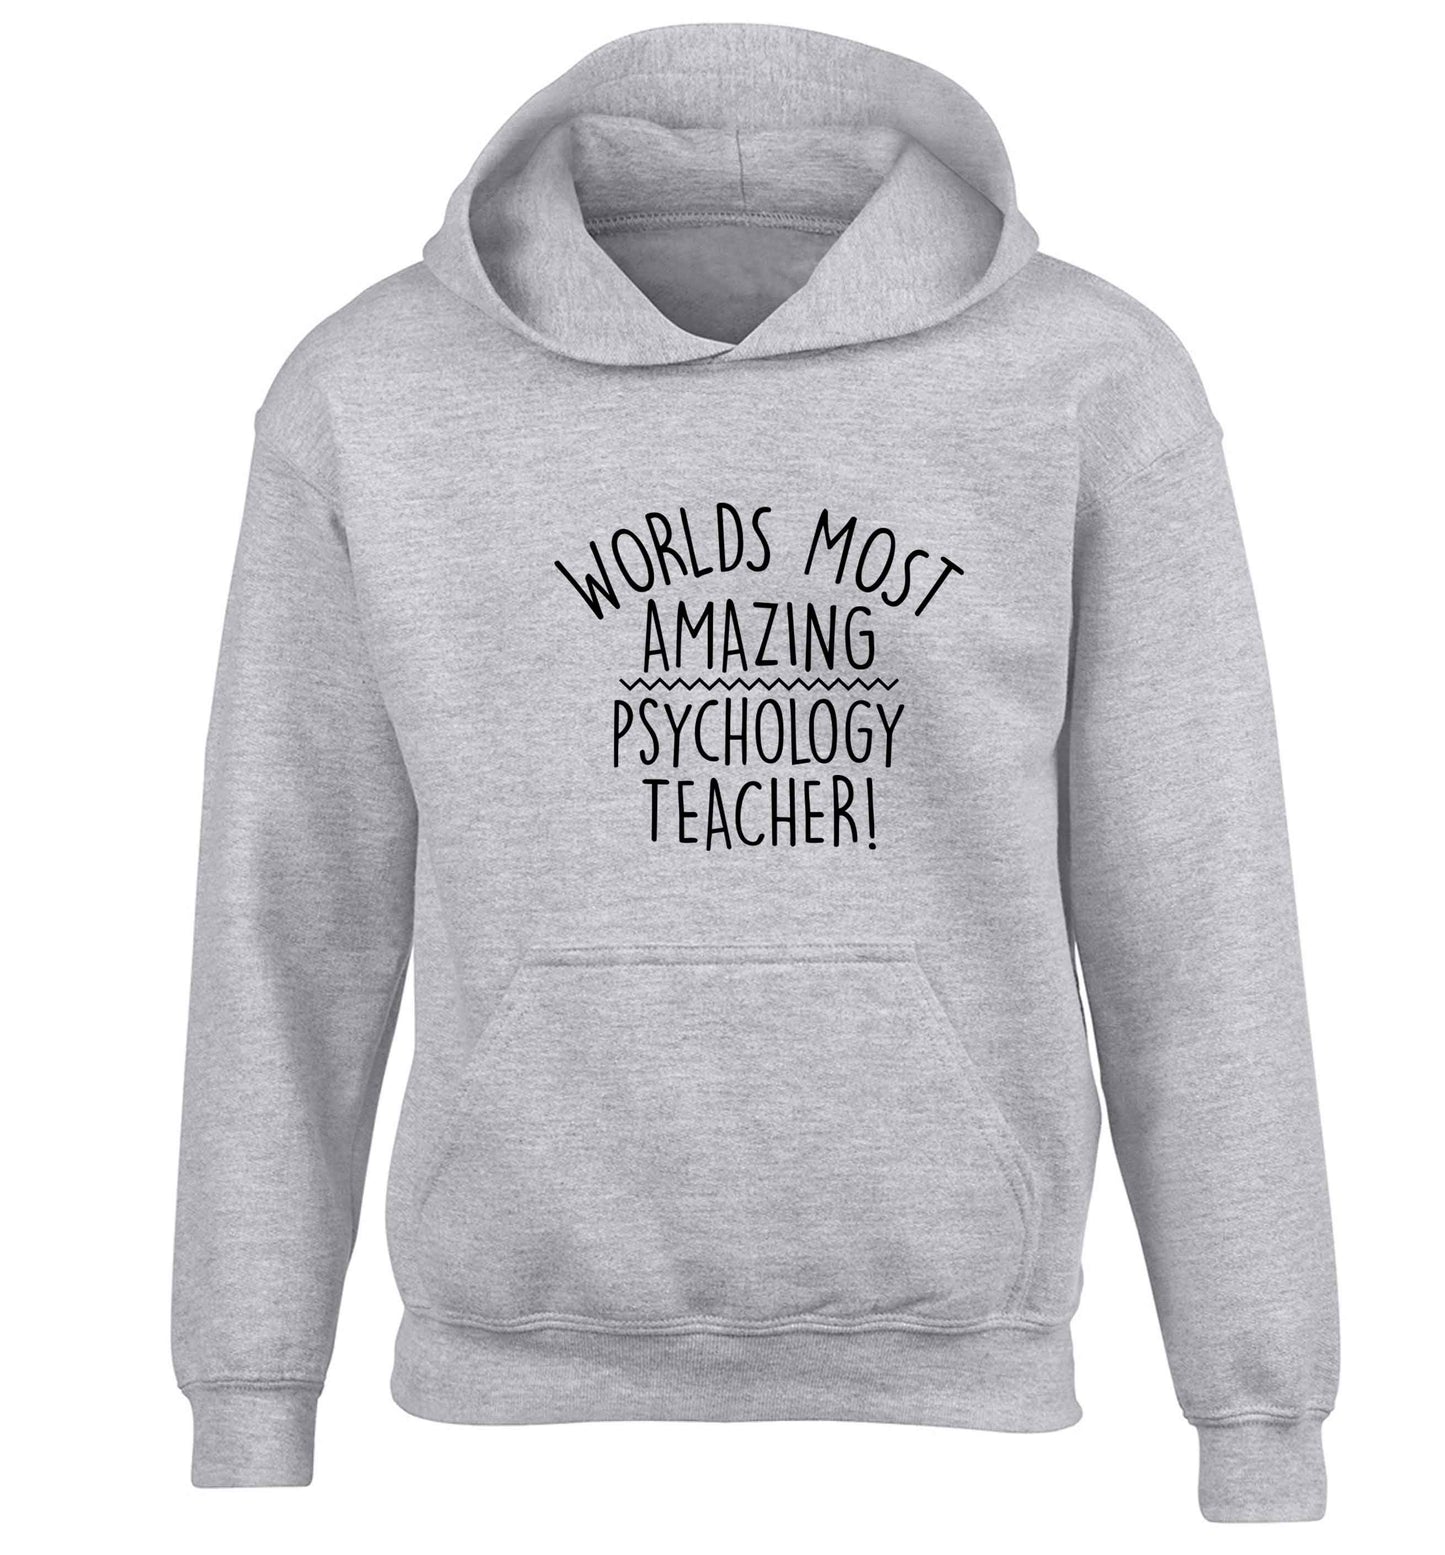 Worlds most amazing psychology teacher children's grey hoodie 12-13 Years